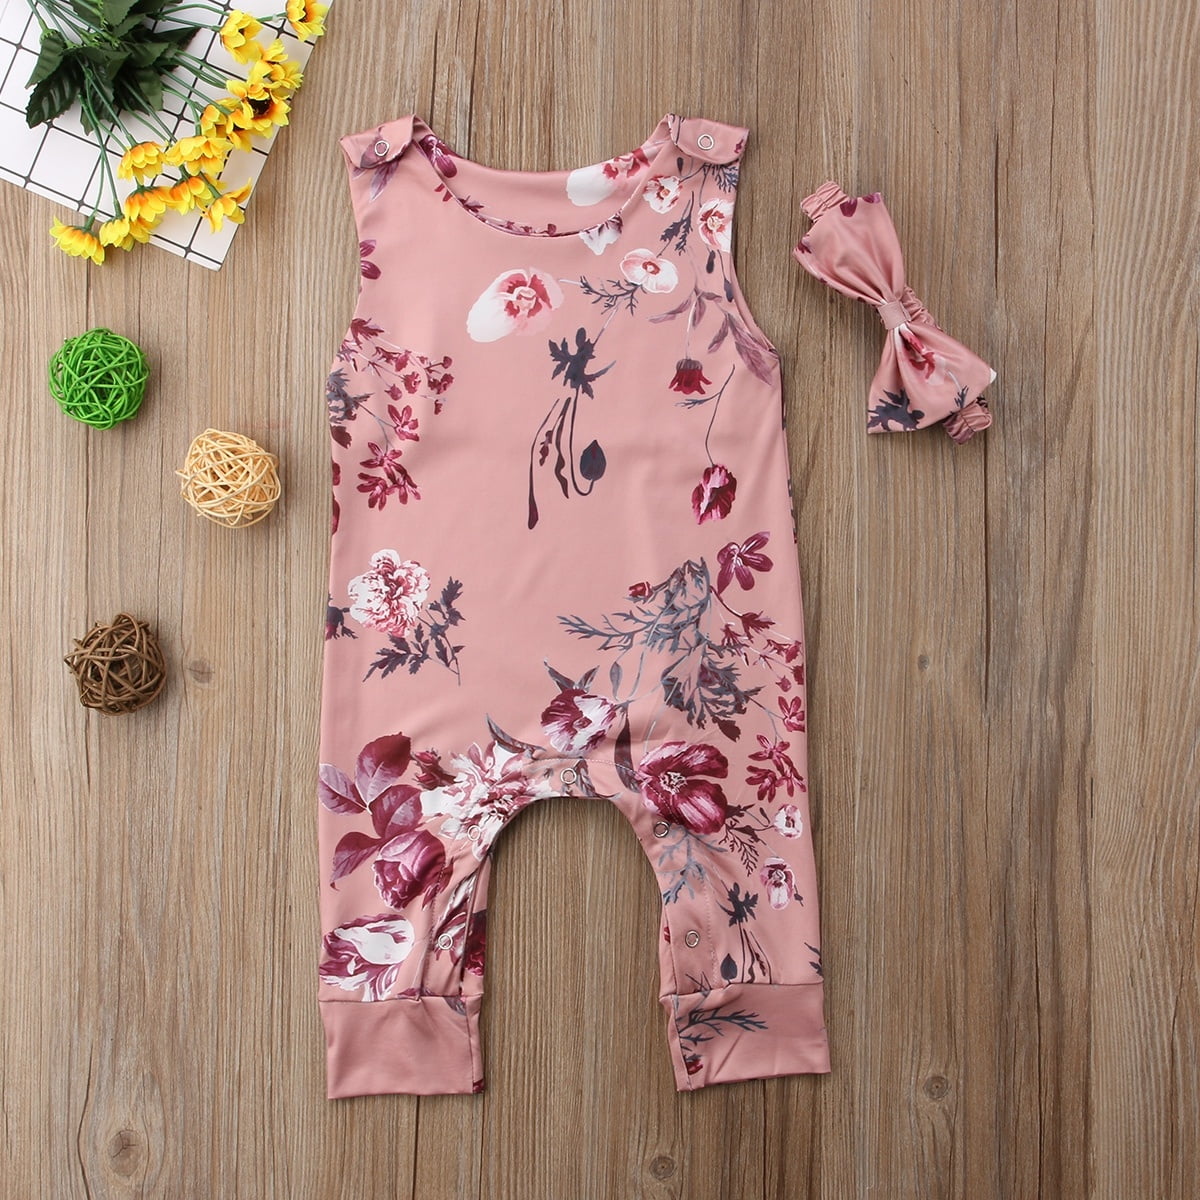 Newborn Infant Baby Girl Jumpsuit Bodysuit Floral Lace Romper Outfits Sunsuit 